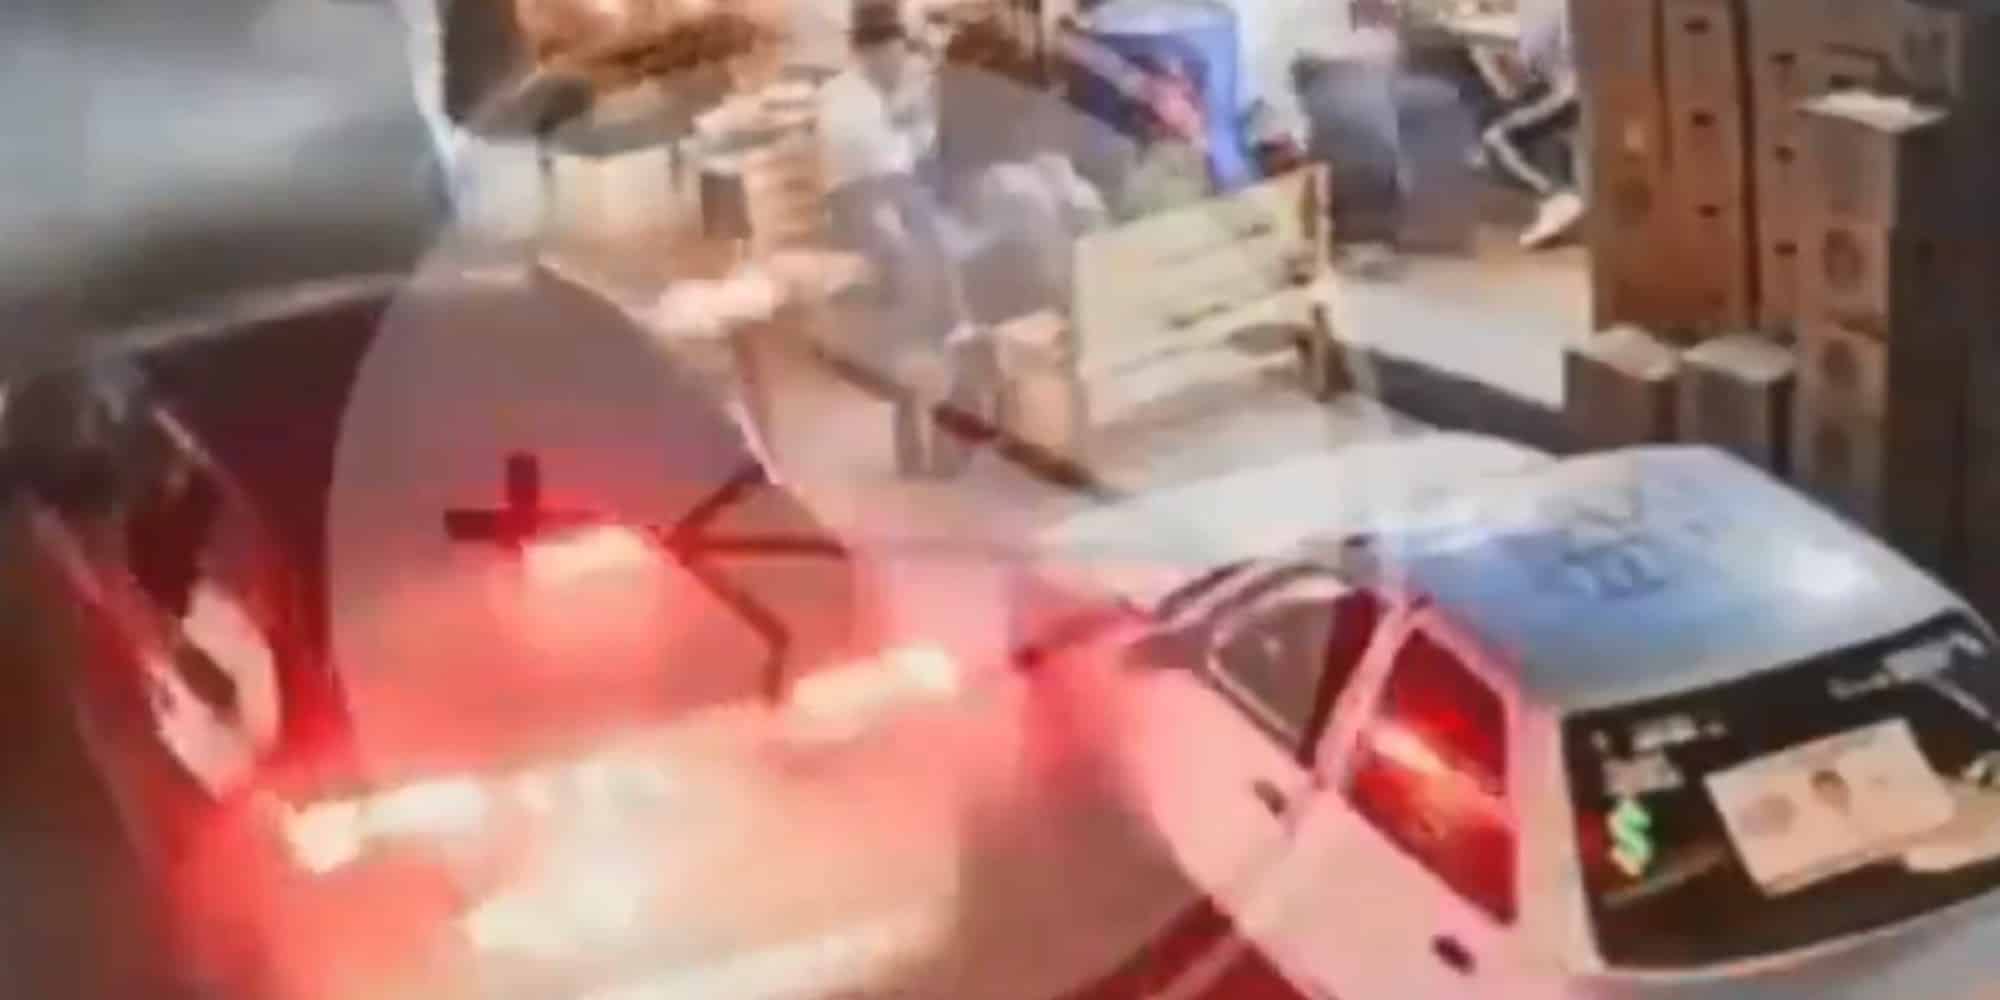 Μακελειό στο Μεξικό: Μαφιόζικη επίθεση σε εμπορικό κατάστημα - Σκοτώθηκαν οκτώ άτομα (βίντεο-σοκ)